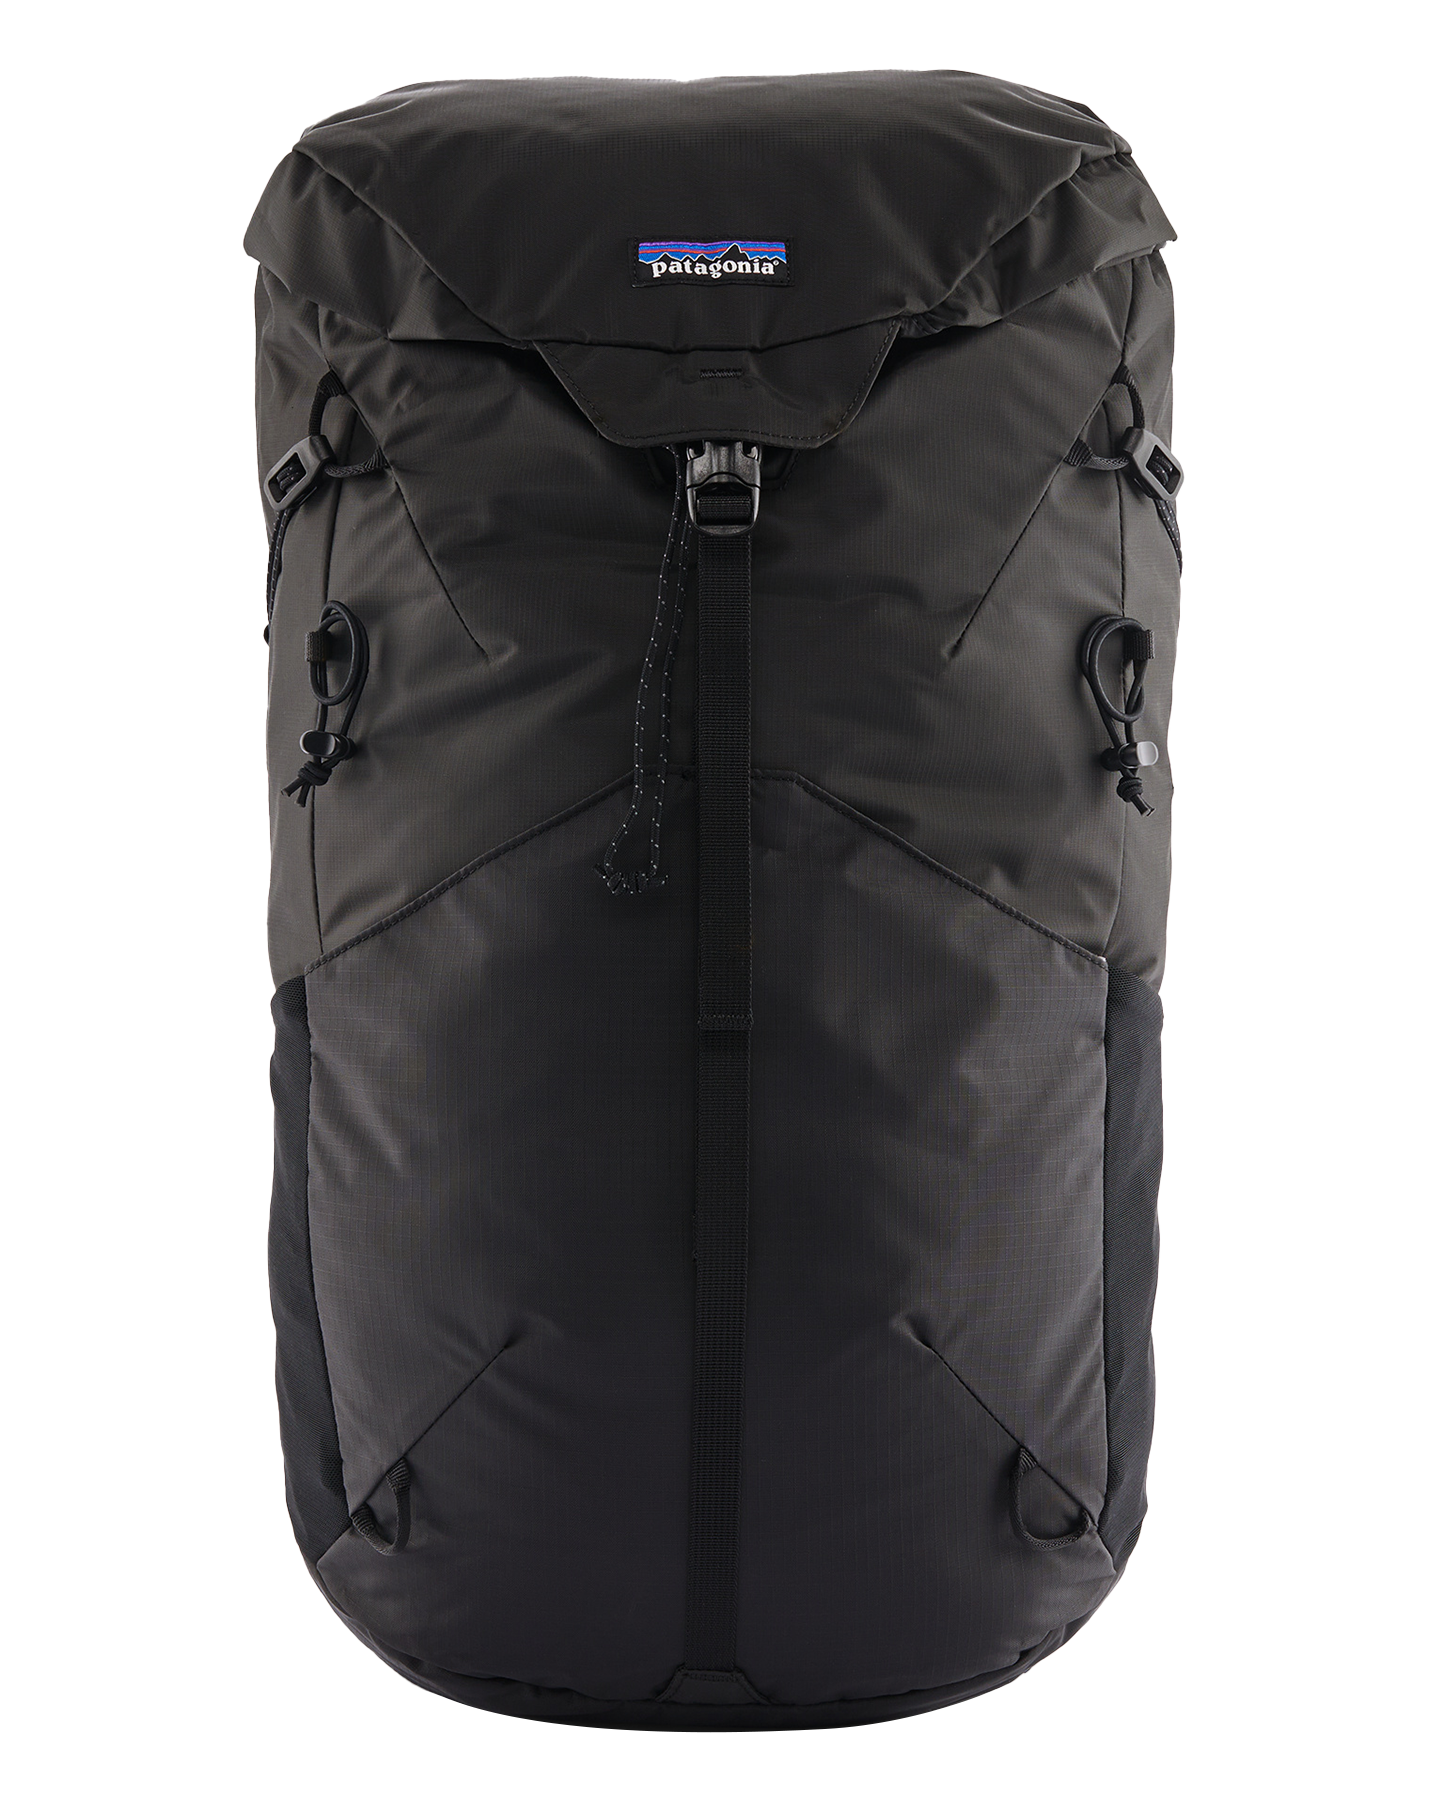 Patagonia Altvia Pack 28L - Black Backpacks - SnowSkiersWarehouse